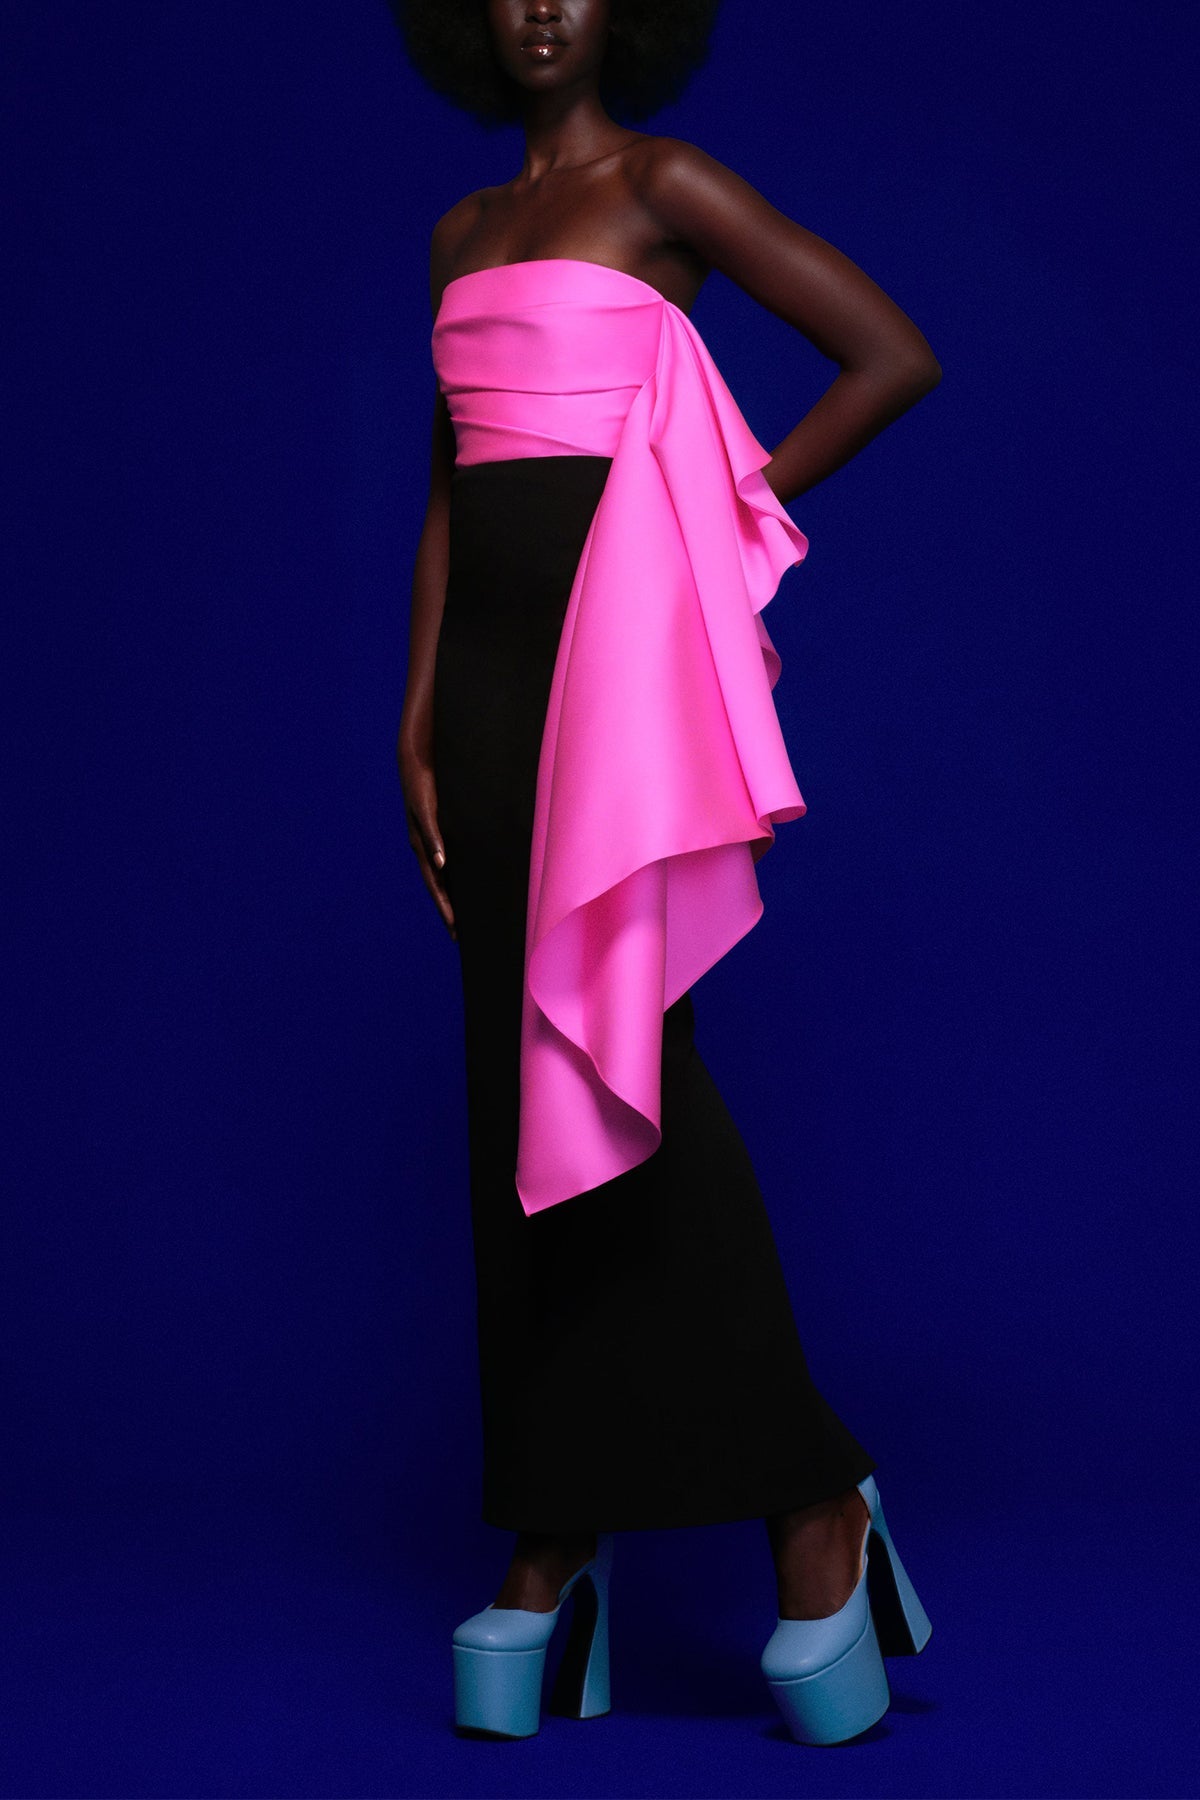 Milena Maxi Dress in Hot Pink and Black - shop-olivia.com